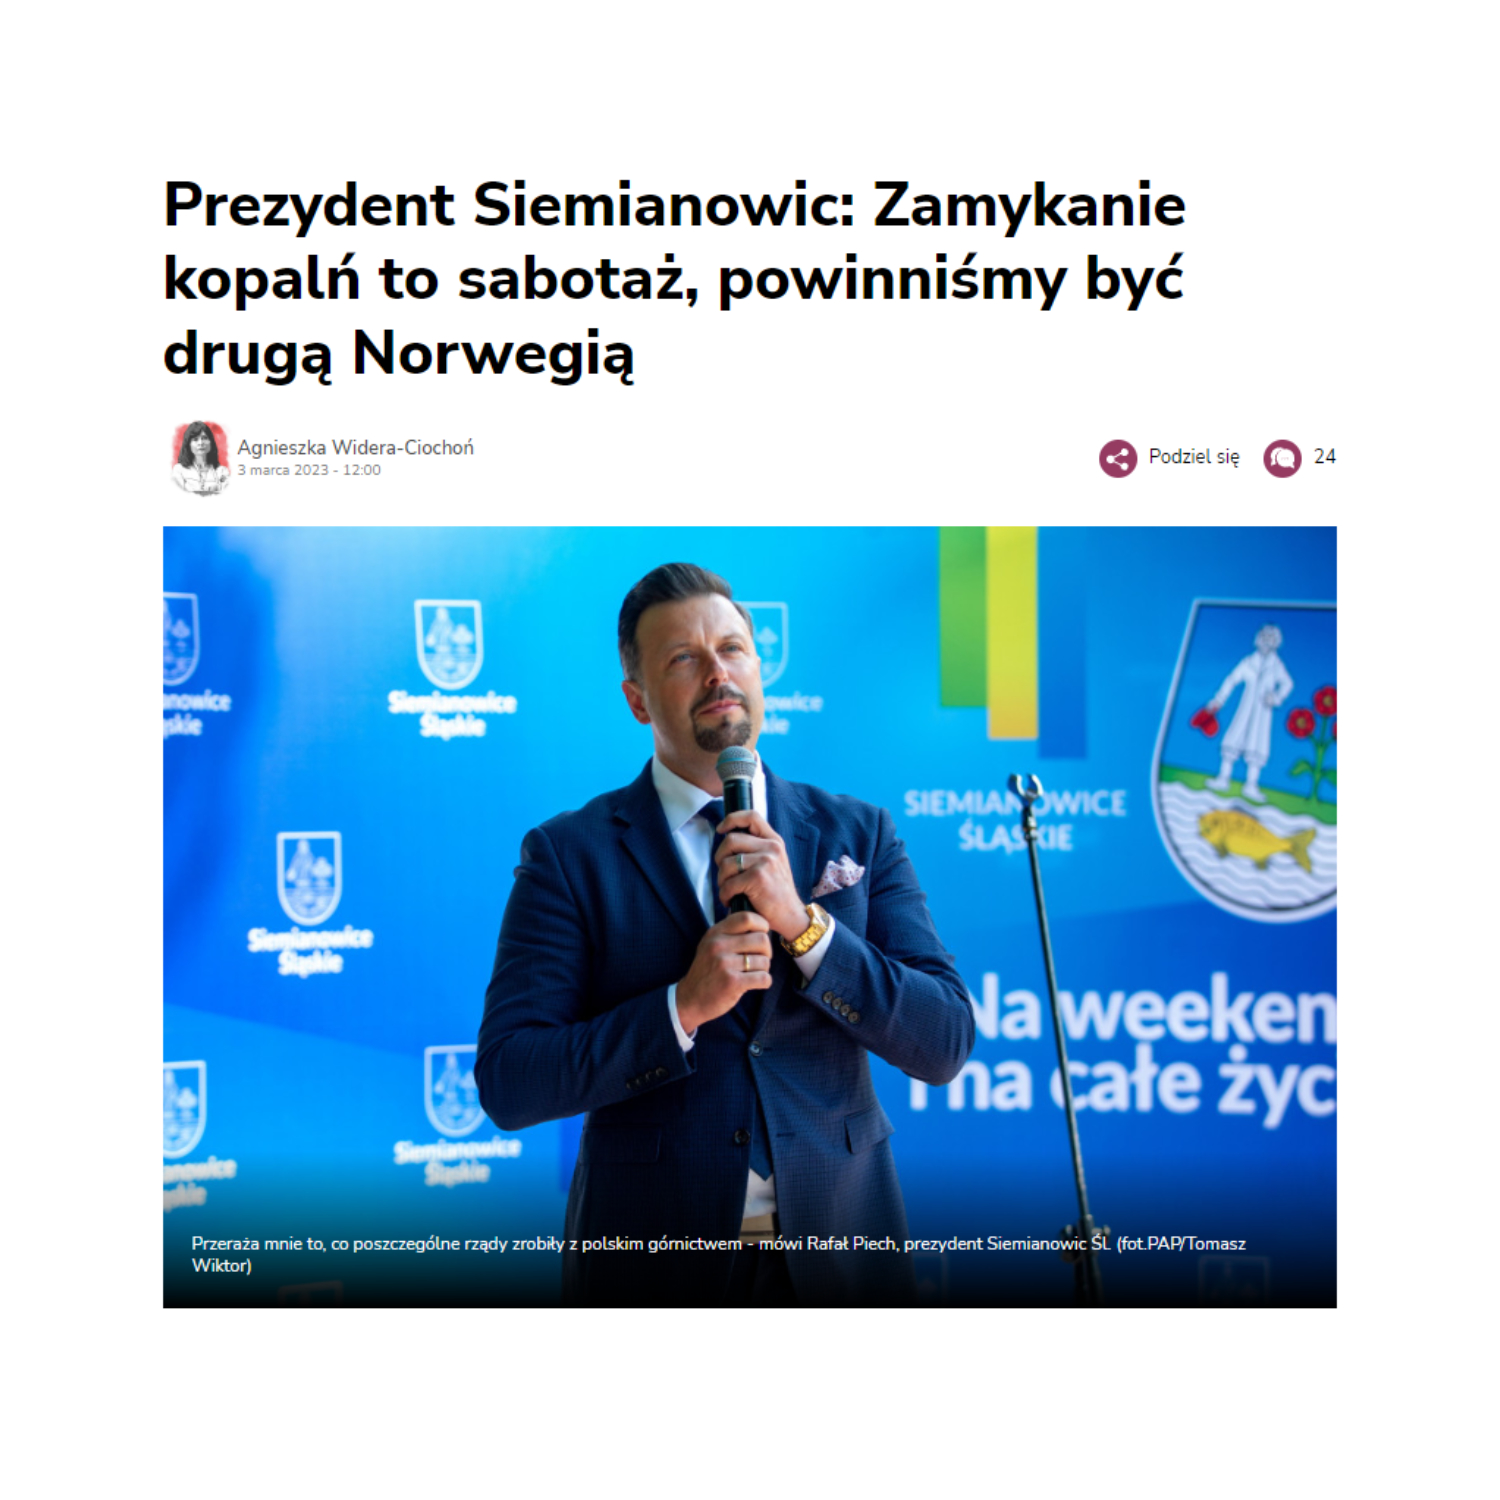 portalsamorzadowy.pl | Prezydent Siemianowic: Zamykanie kopalń to sabotaż, powinniśmy być drugą Norwegią